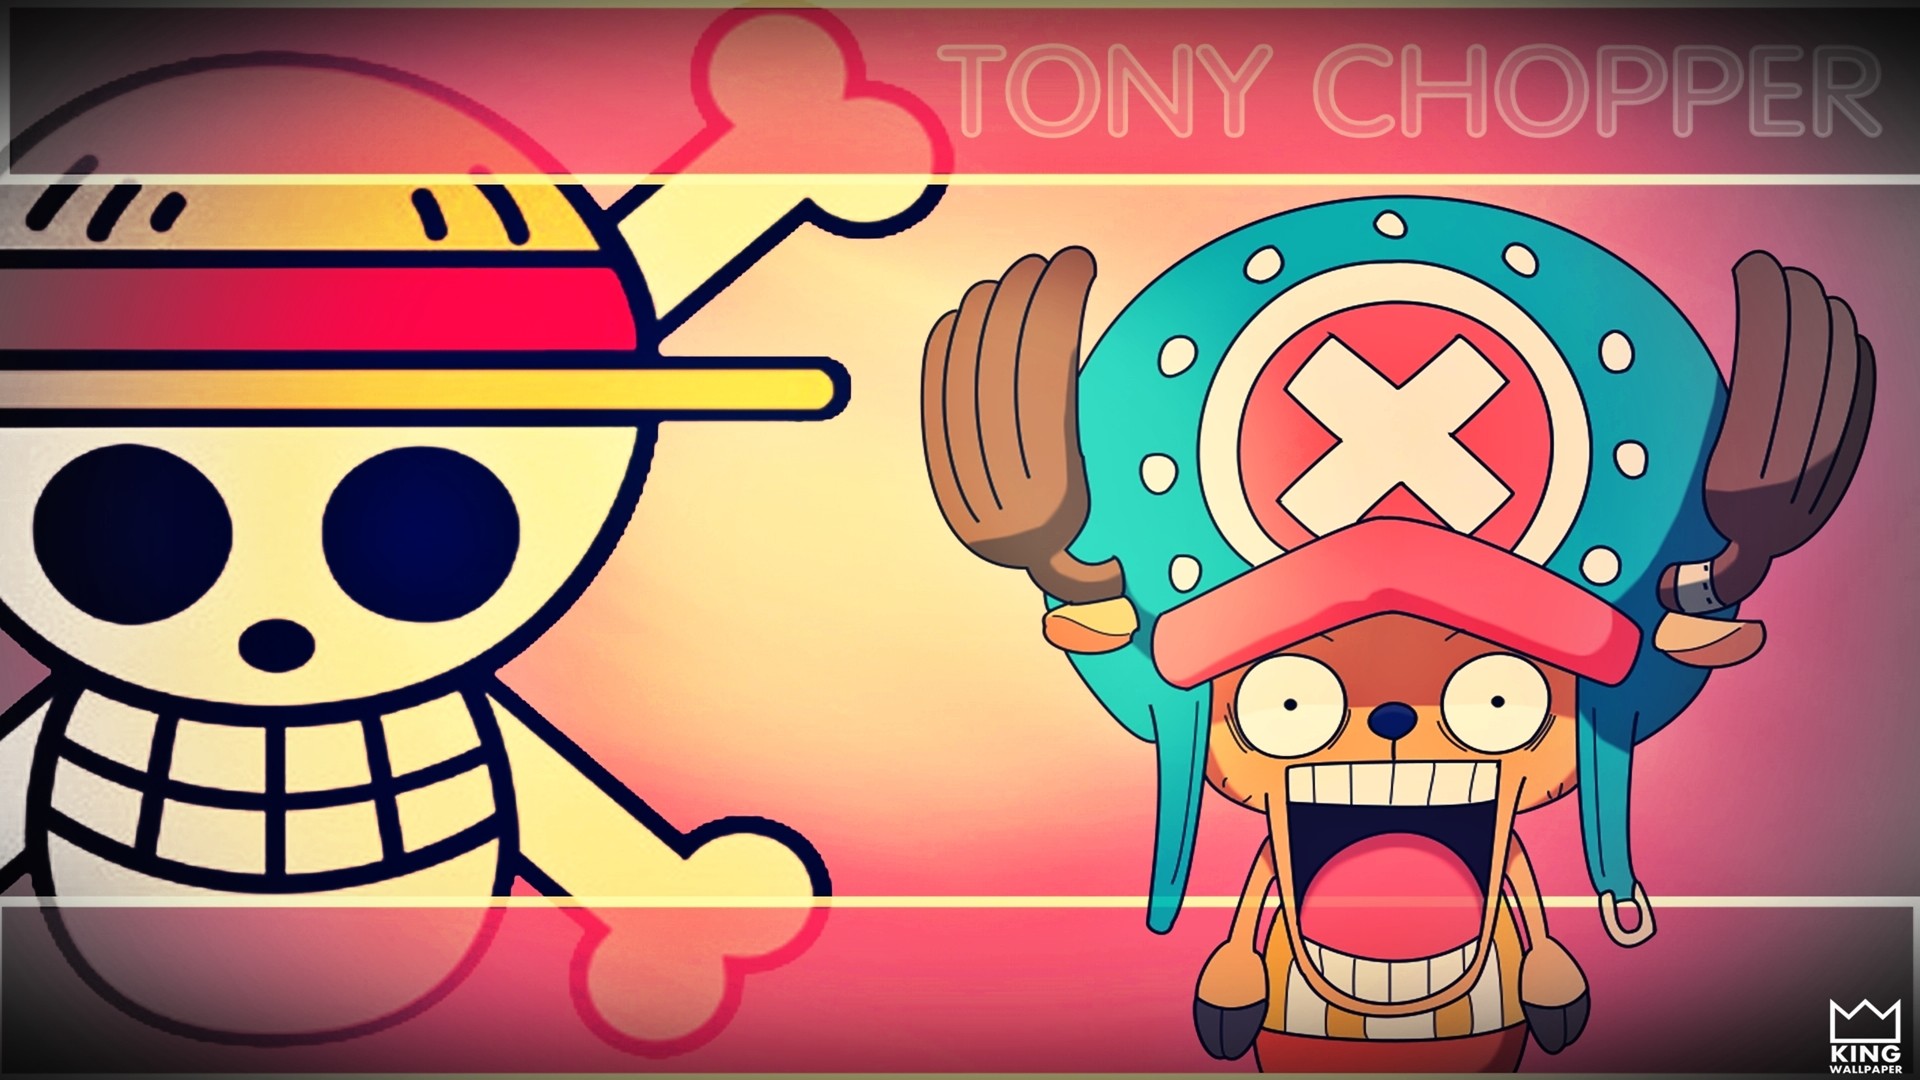 Tony Chopper Wallpaper – One Piece by Kingwallpaper on DeviantArt